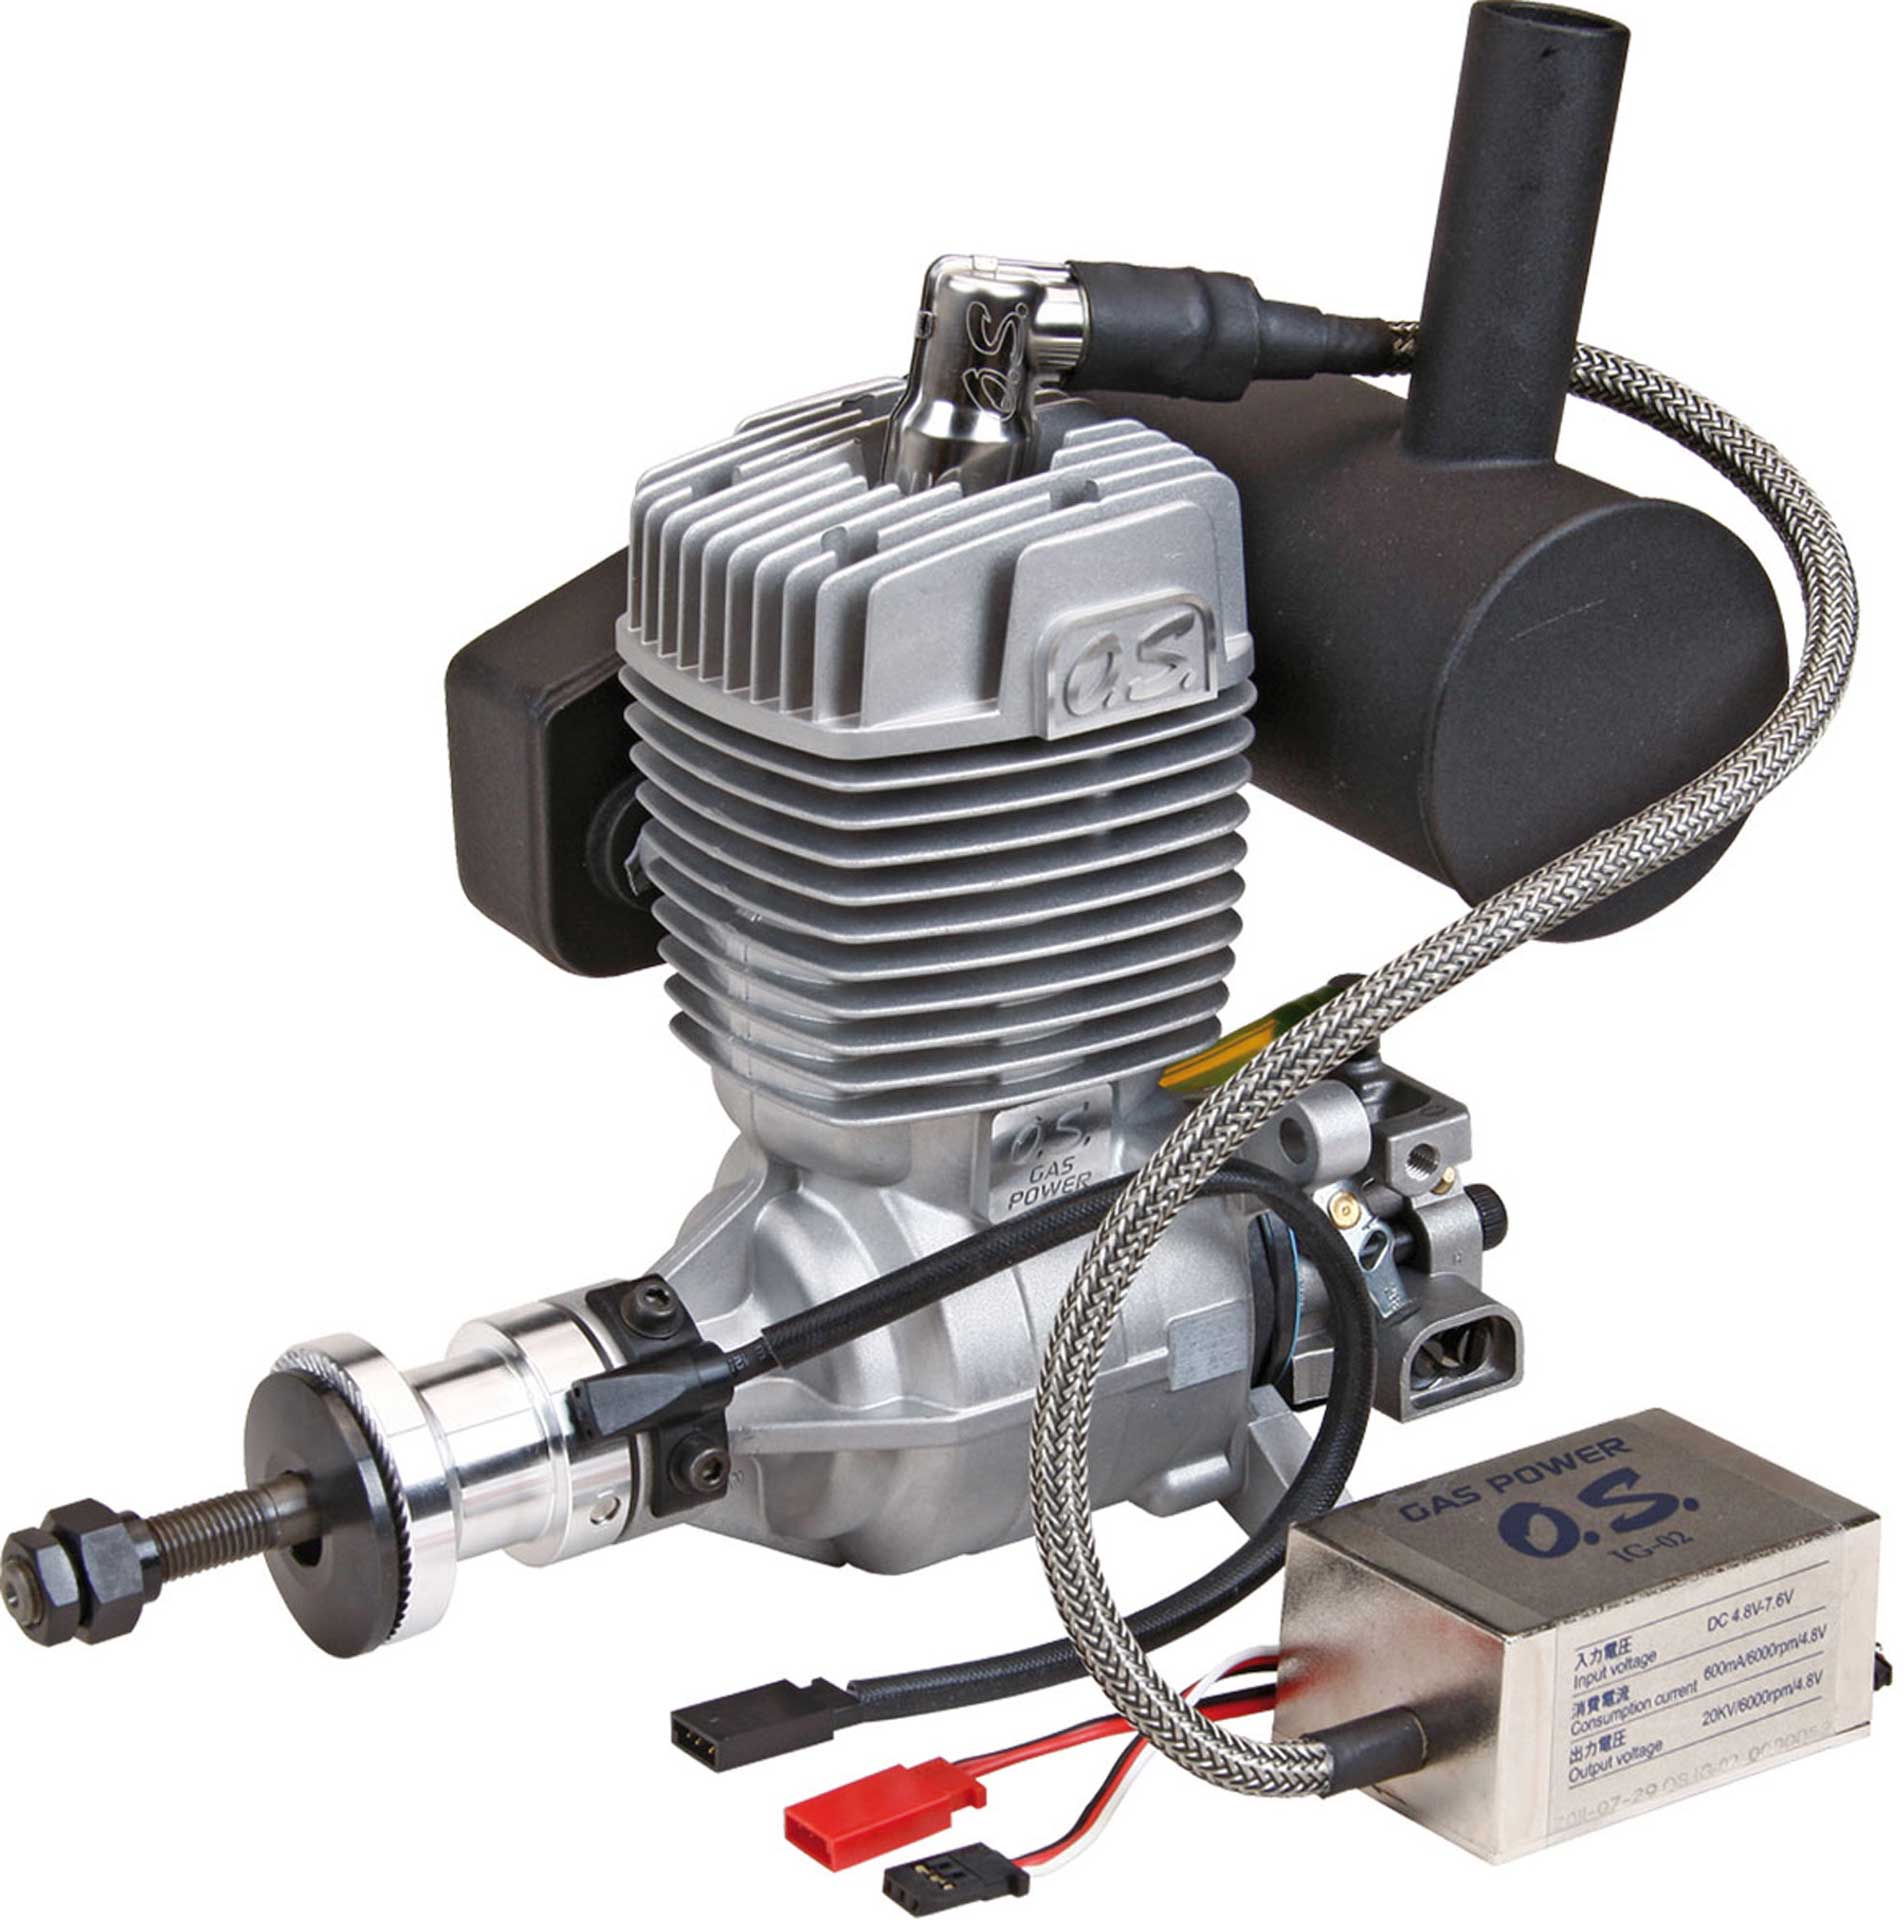 OS GT-33 Benzin Motor mit elektronischer Zündung IG-02 und Schalldämpfer E-5030